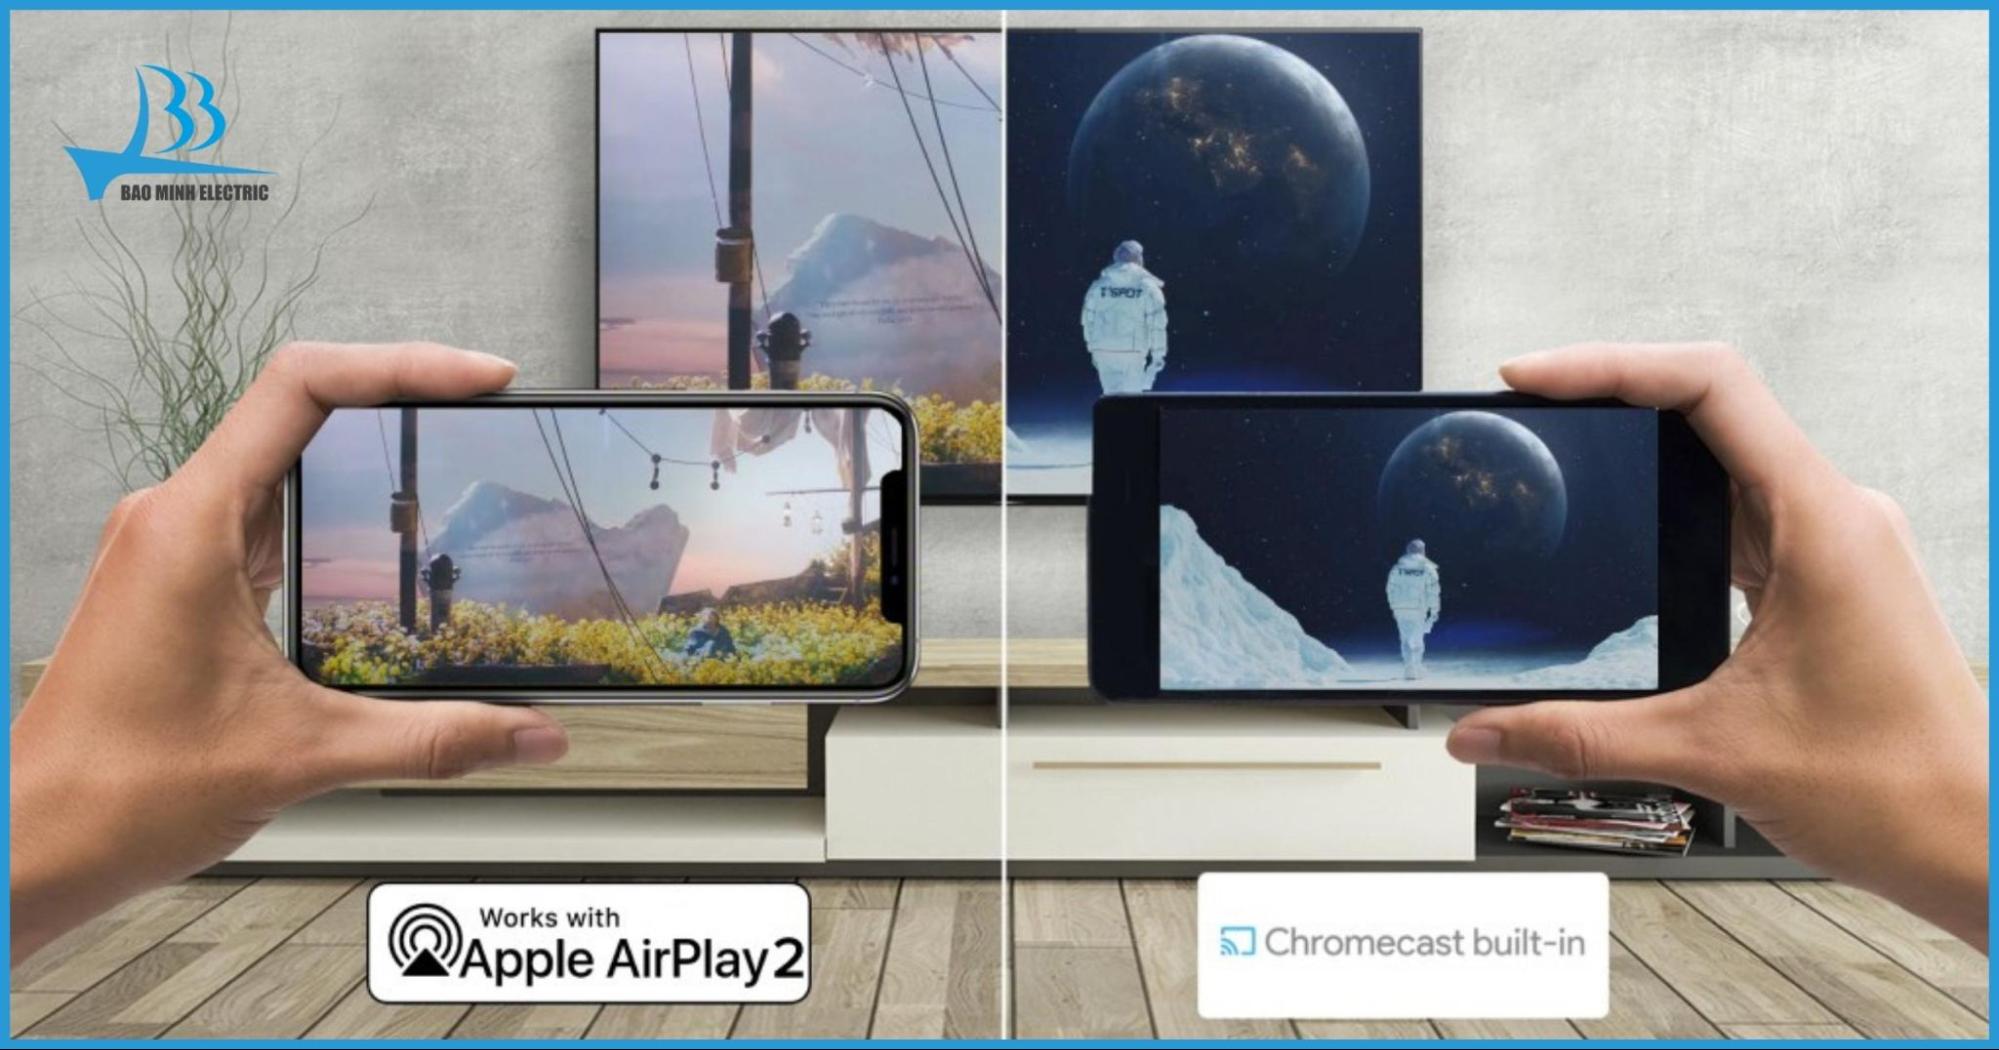 Hỗ trợ các tính năng kết nối không dây như Chromecast, AirPlay và Apple HomeKit